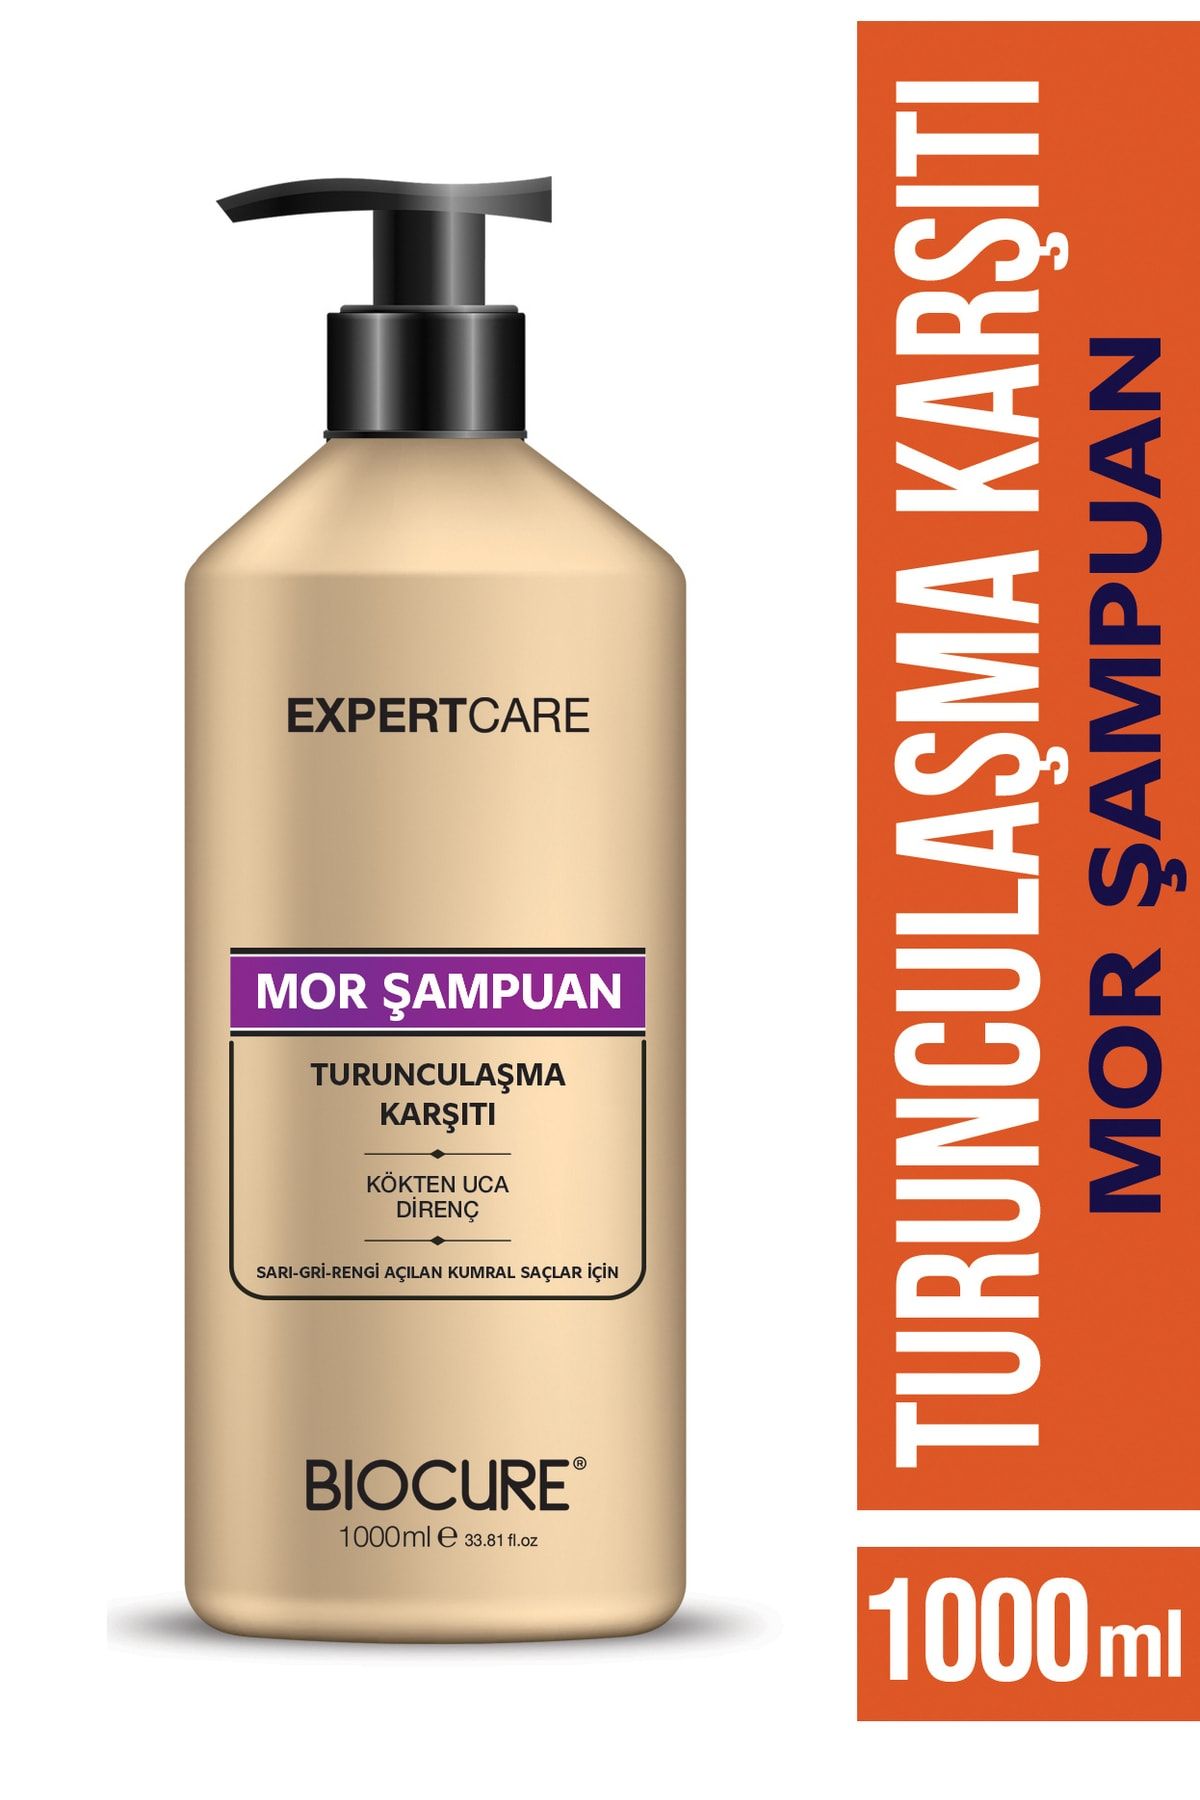 Biocure Turunculaşma Karşıtı Mor Şampuan / Sarı-gri-rengi Açılan Kumral Saçlar Için 1 Litre